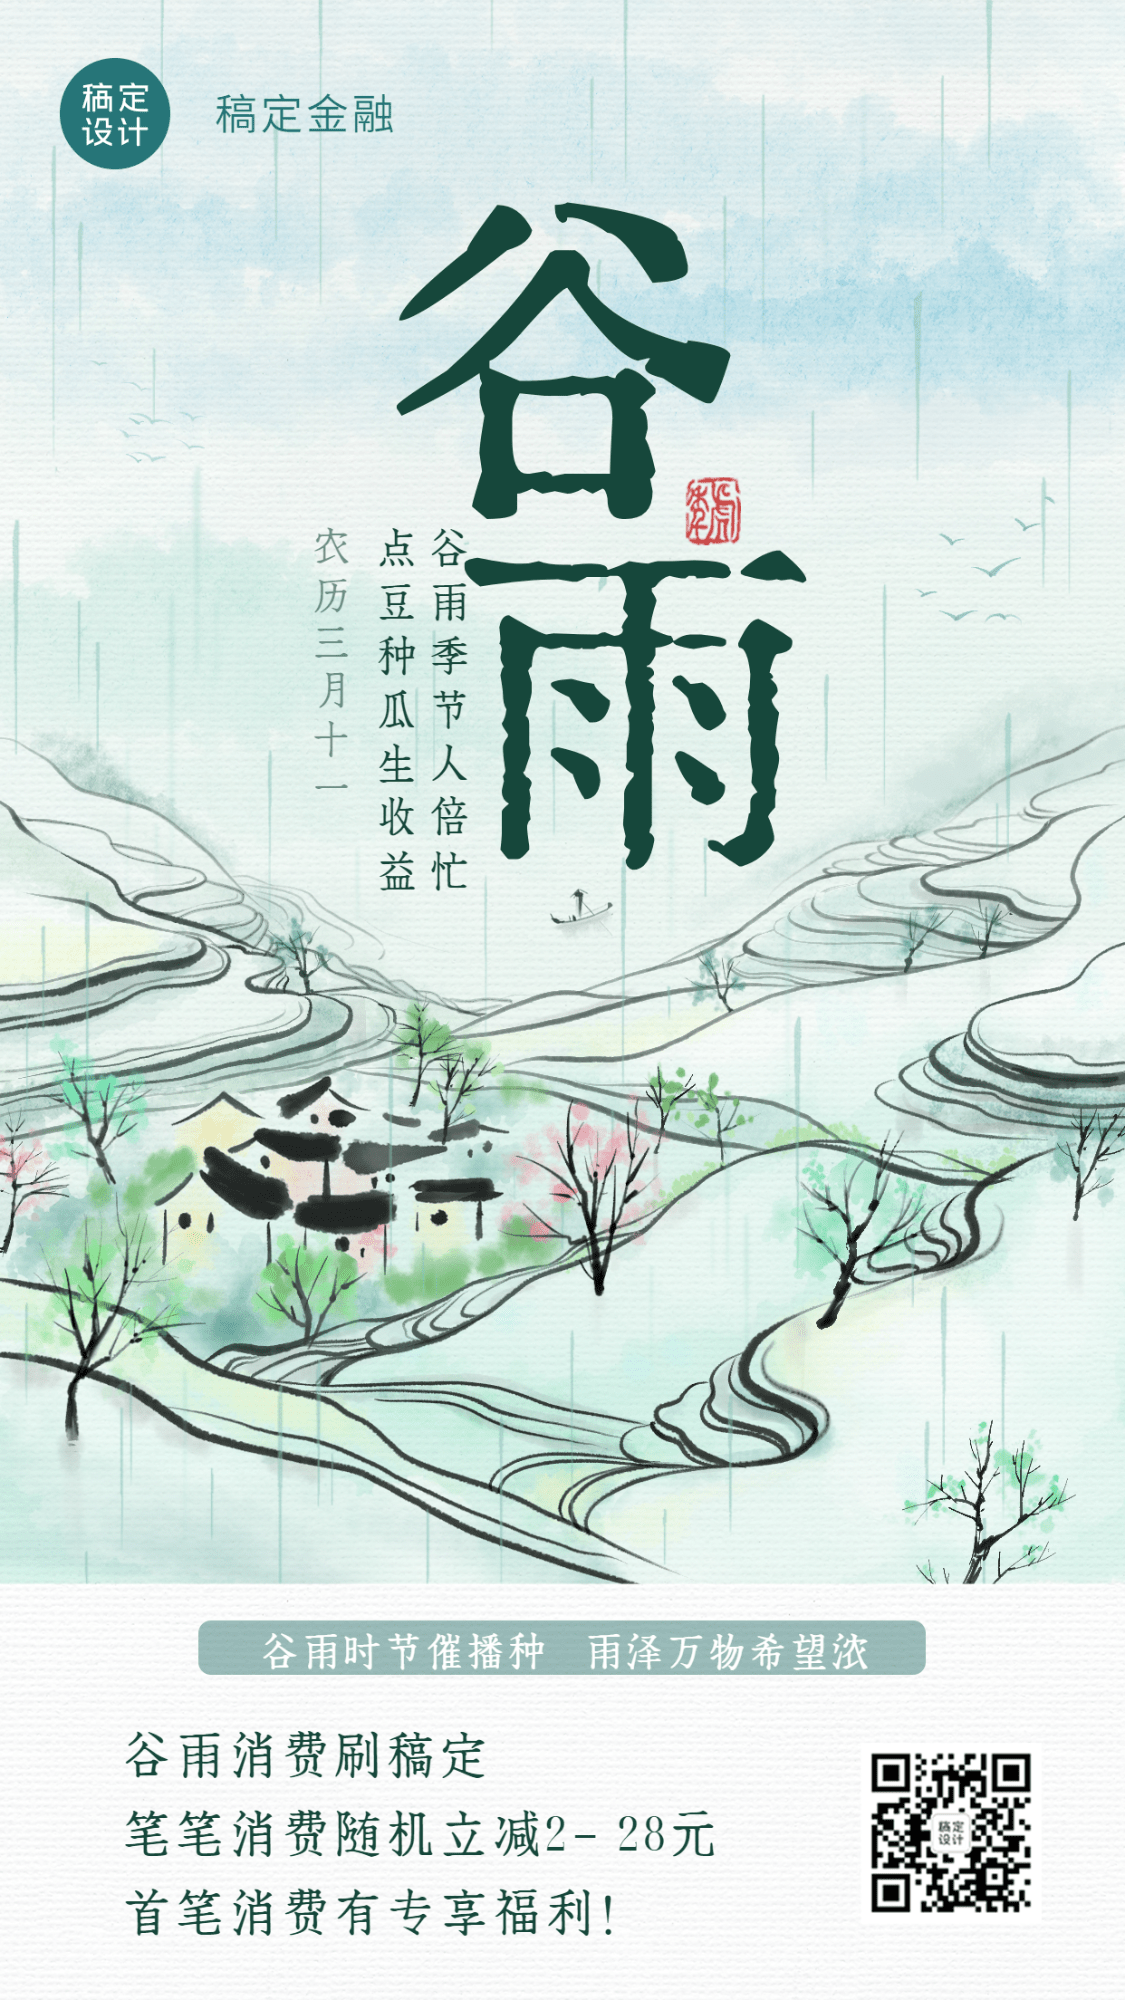 金融保险谷雨节气祝福清新中国风水墨画海报